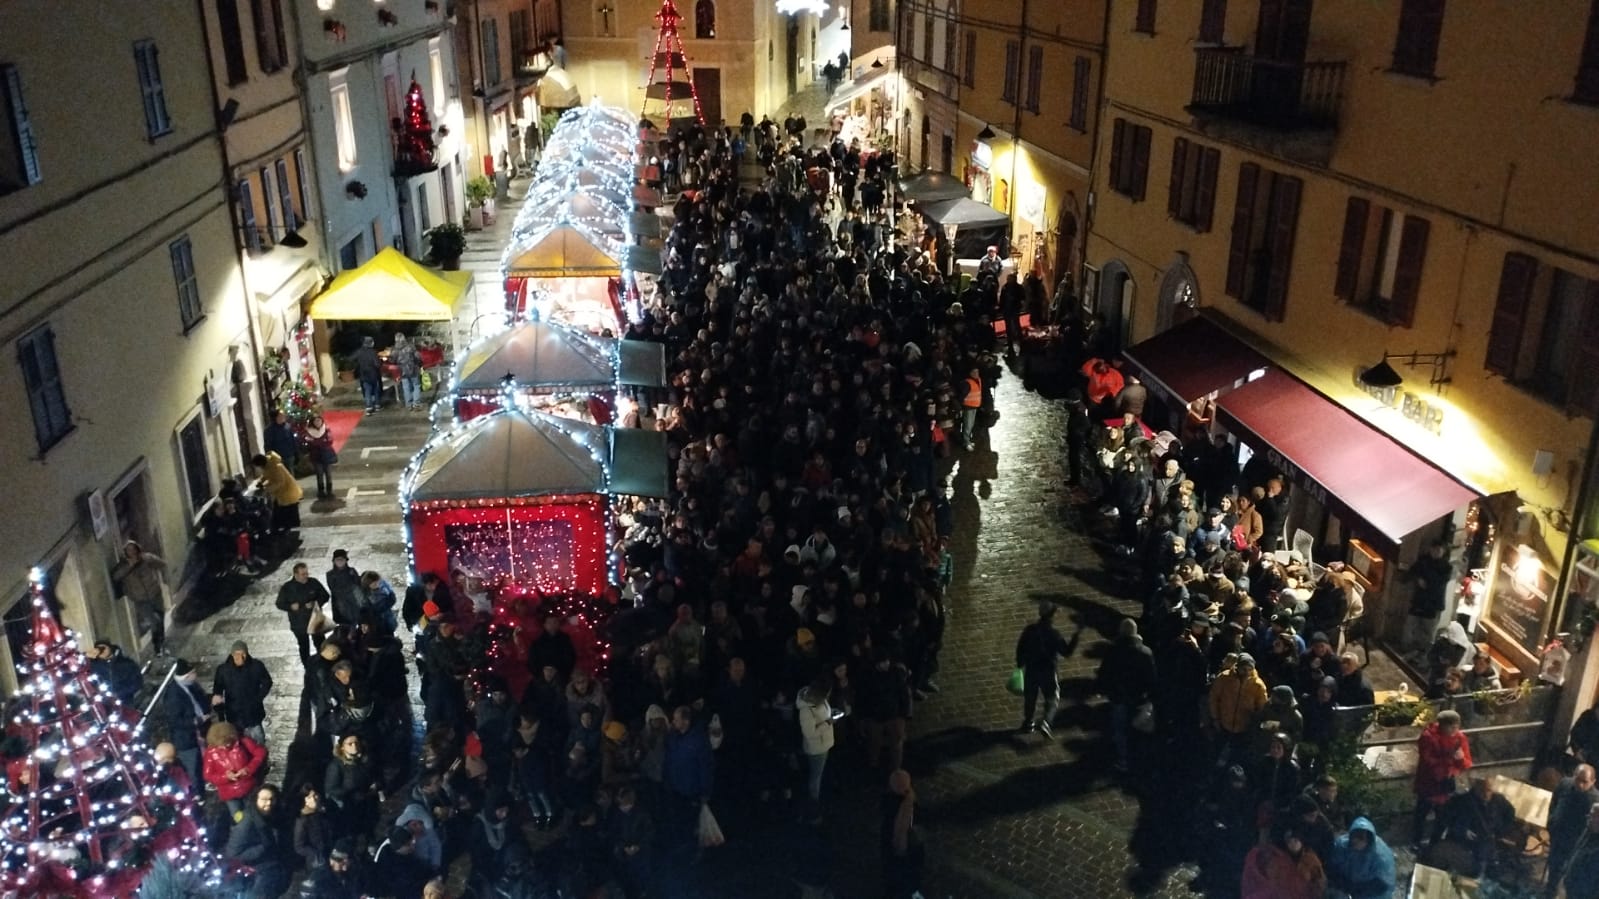 Sant’Agata Feltria diventa il “Paese del Natale” per due domeniche a dicembre